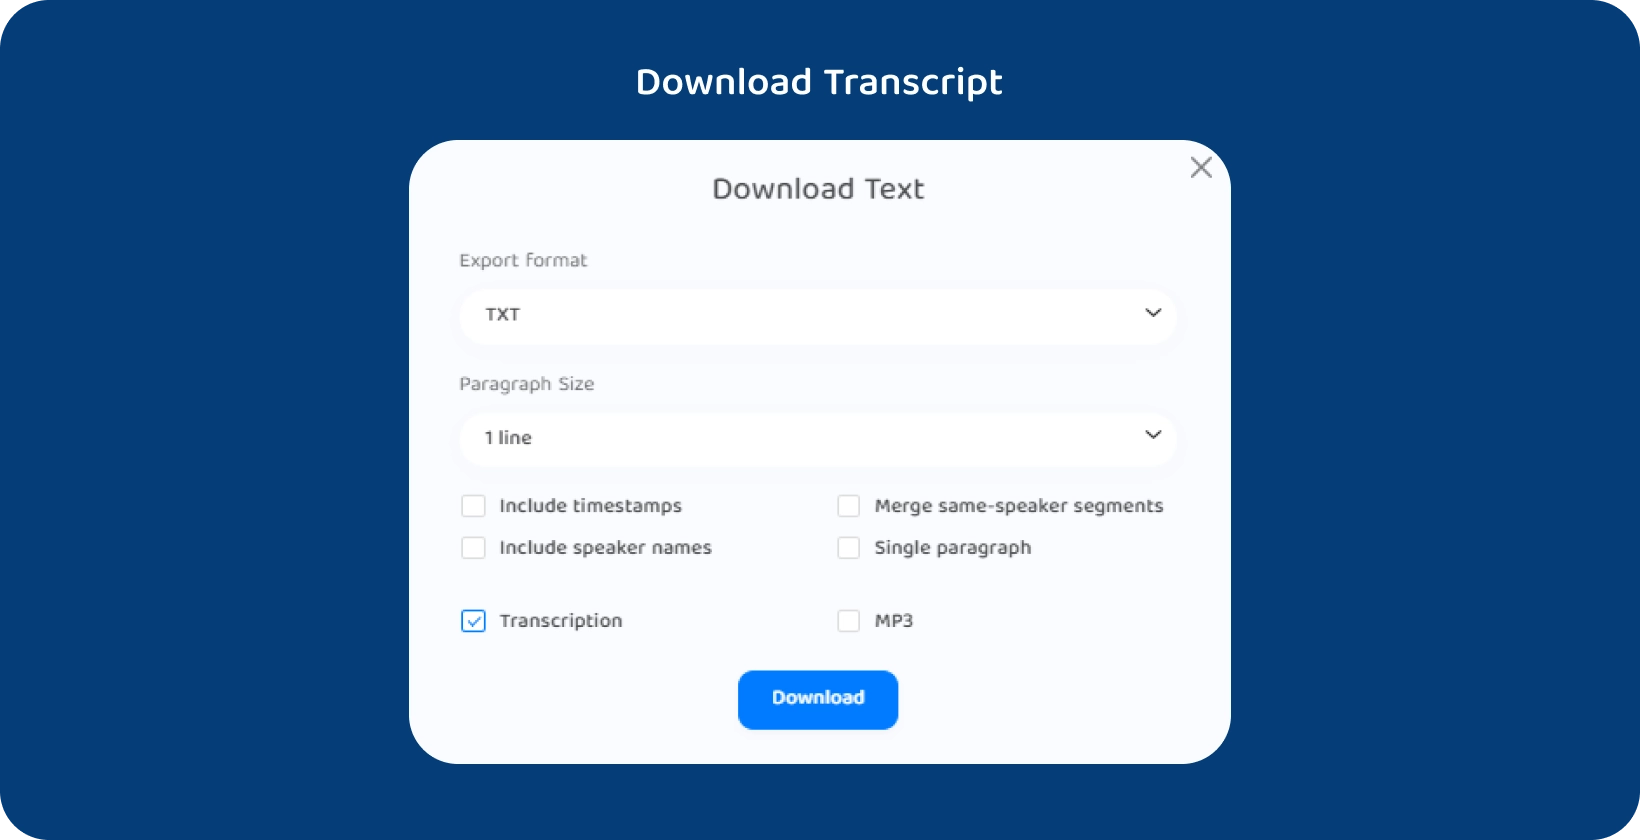 Transkriptor rozhranie zobrazujúce možnosti stiahnutia textu prepísanej prednášky.